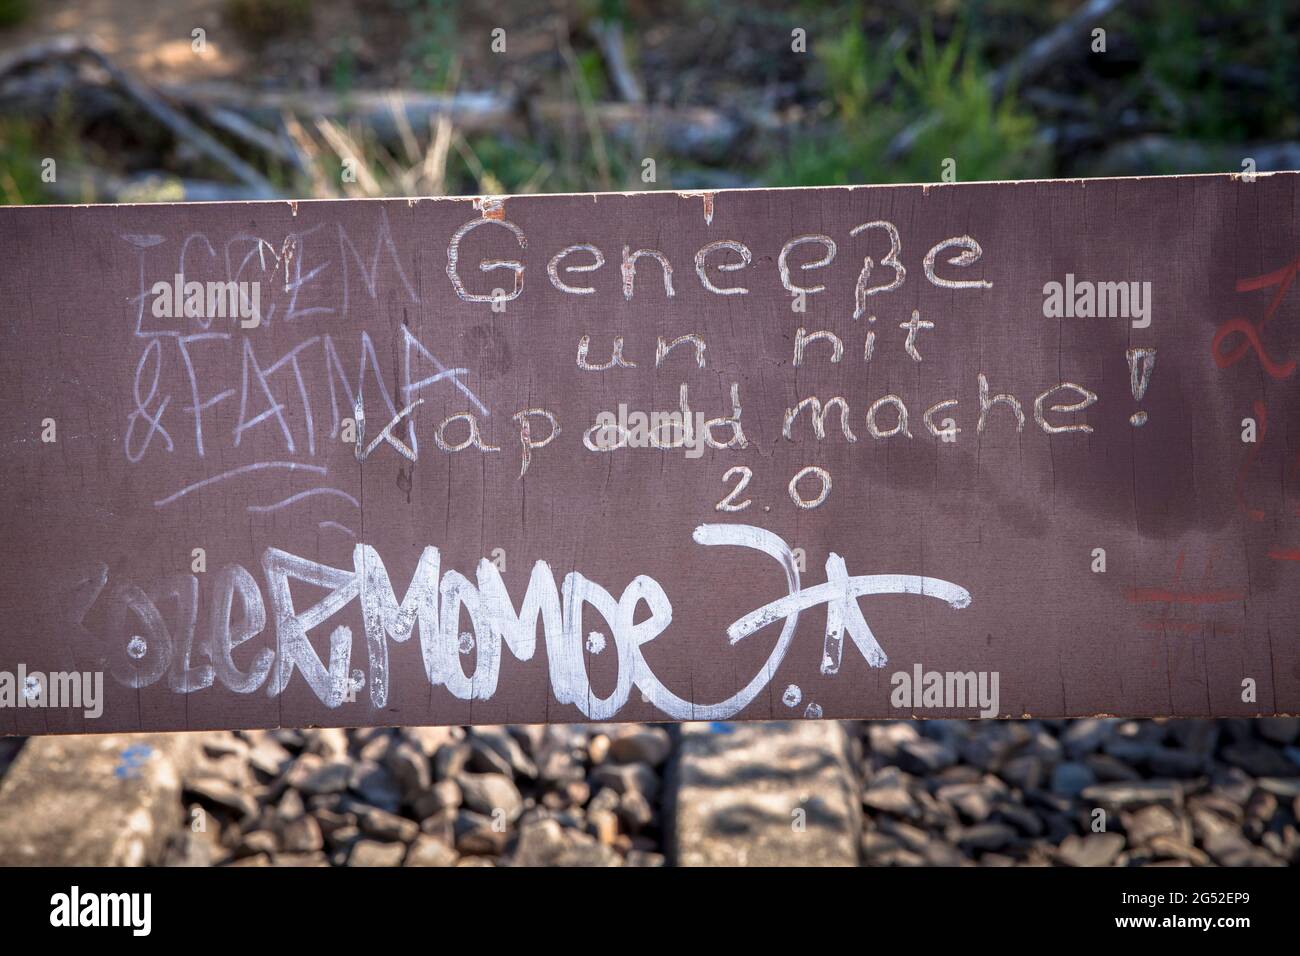 Un banc avec graffiti (traduction: Apprécier et ne pas détruire) se dresse à Koenigsforest, Cologne, Allemagne Eine Bank mit graffitis (Geneeße un nit kapoddma Banque D'Images